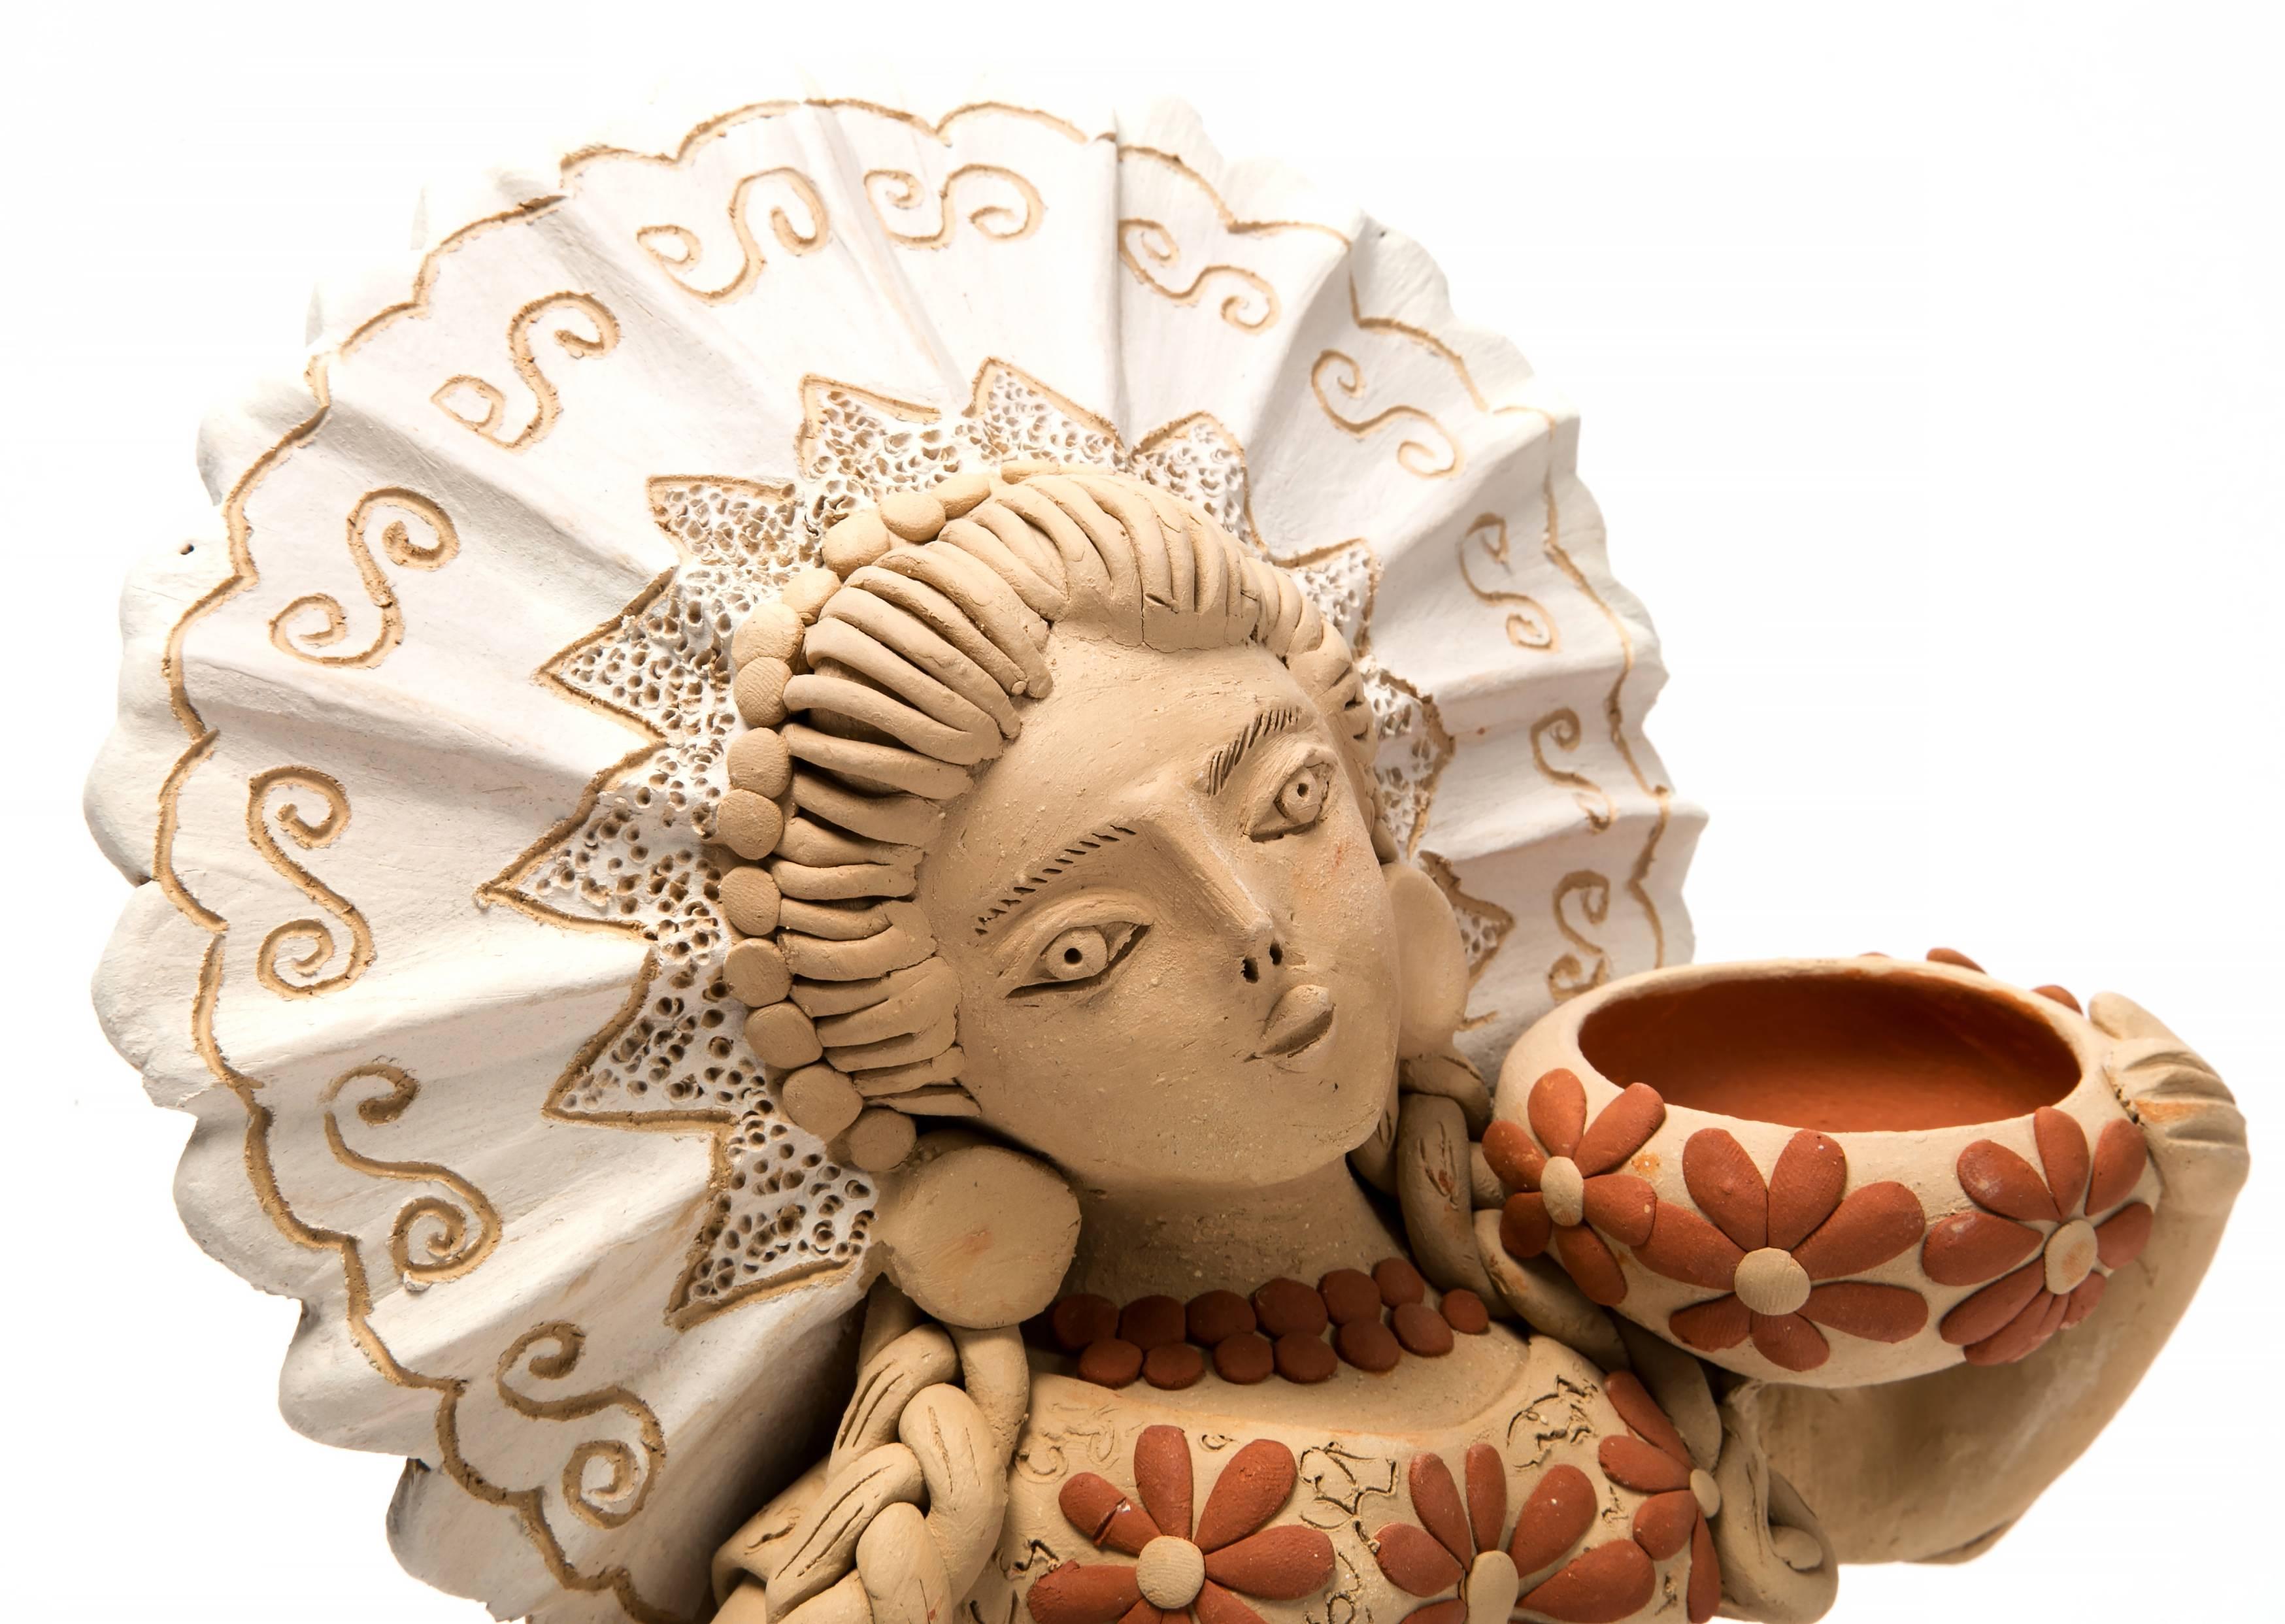 Sirena / Ceramics Mexican Folk Art Clay - Sculpture by Enedina Vasquez Cruz